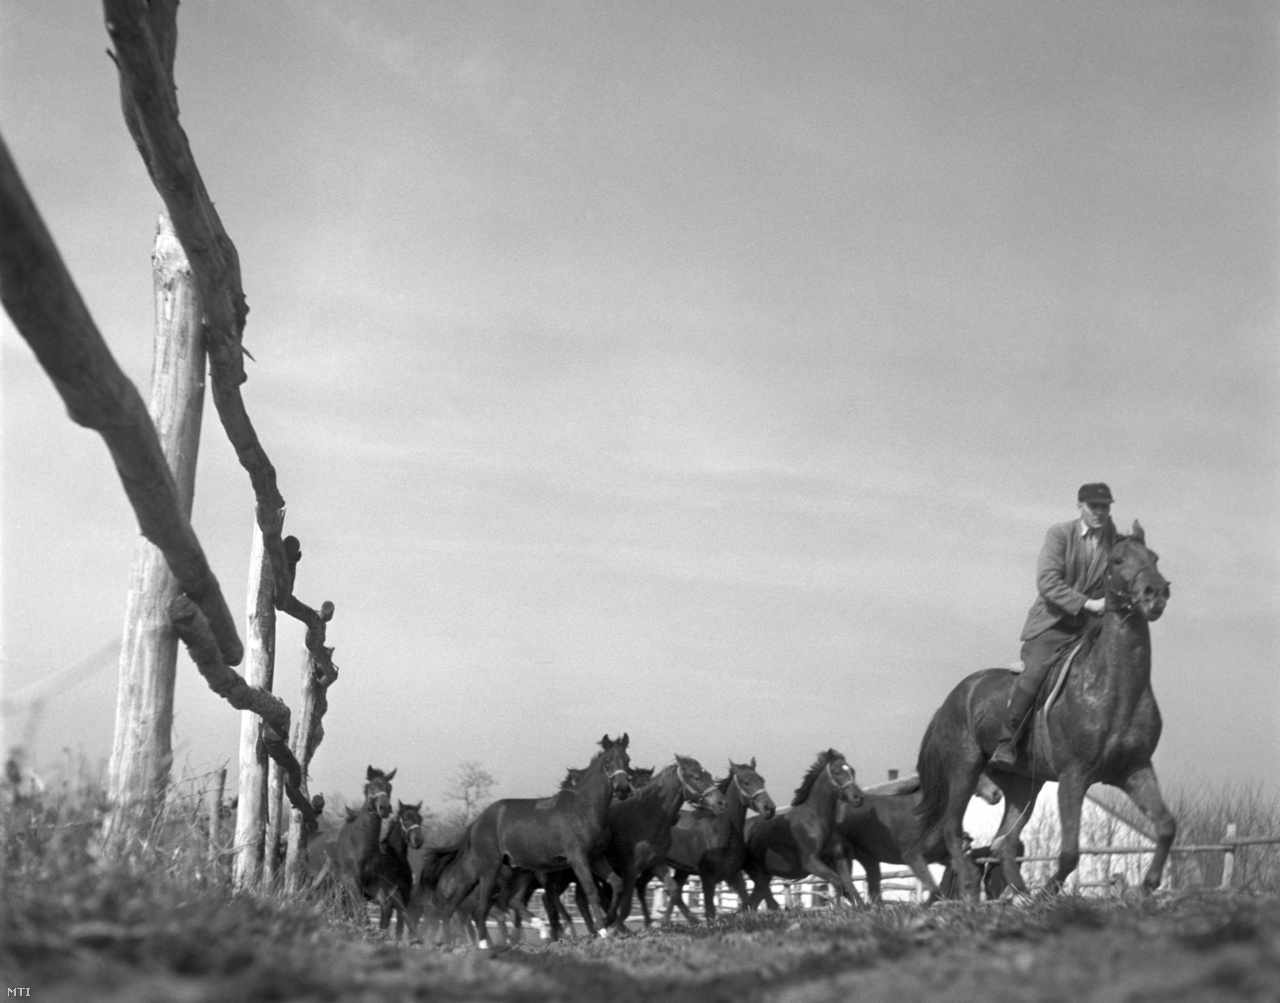 Az egyéves méncsikókat járatja az Ügető pusztaberényi Állami Méntelepének lovásza 1957. március 16-án. A telepen versenylovakat neveltek, amelyek egy részét exportálták